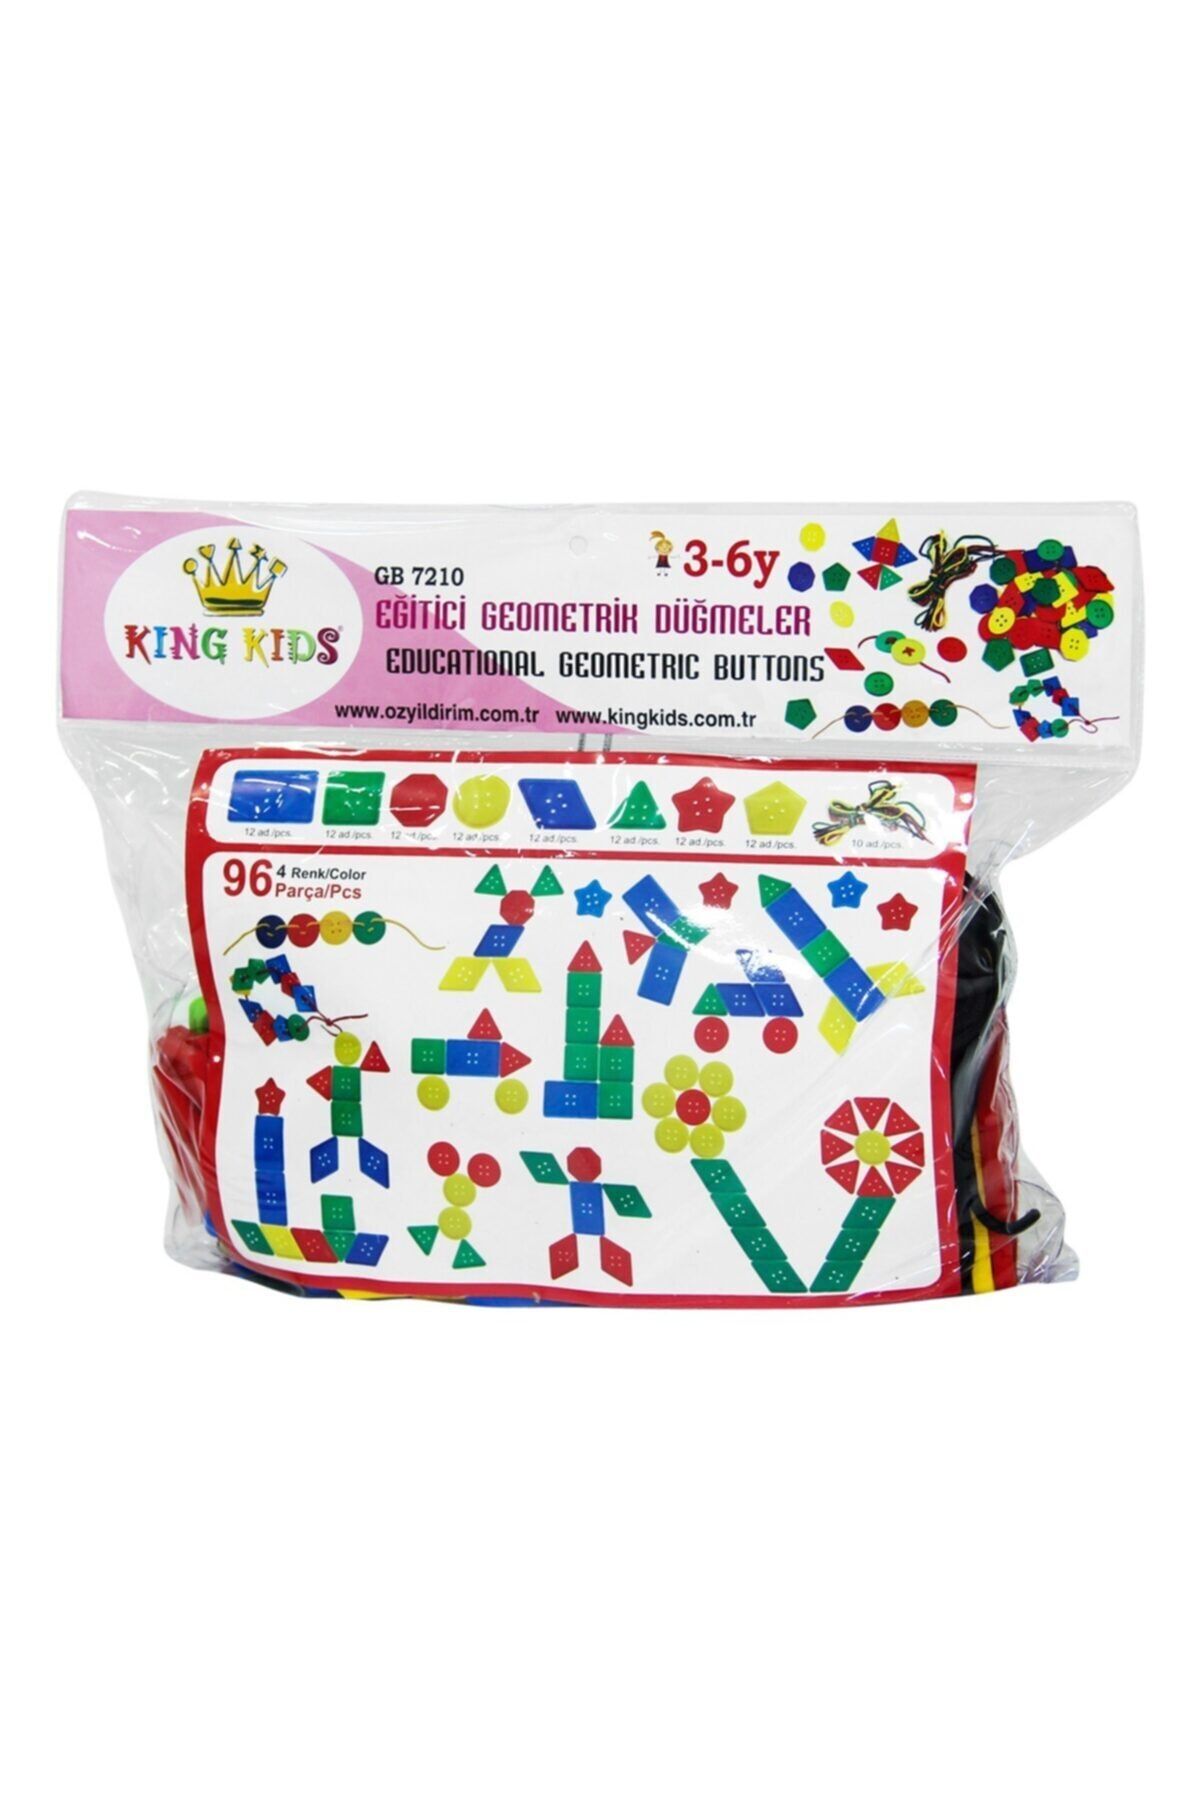 King Geometrik Düğmeler Ipe Geçirme Oyunu 96 Parça Çocuk Oyuncak Blok